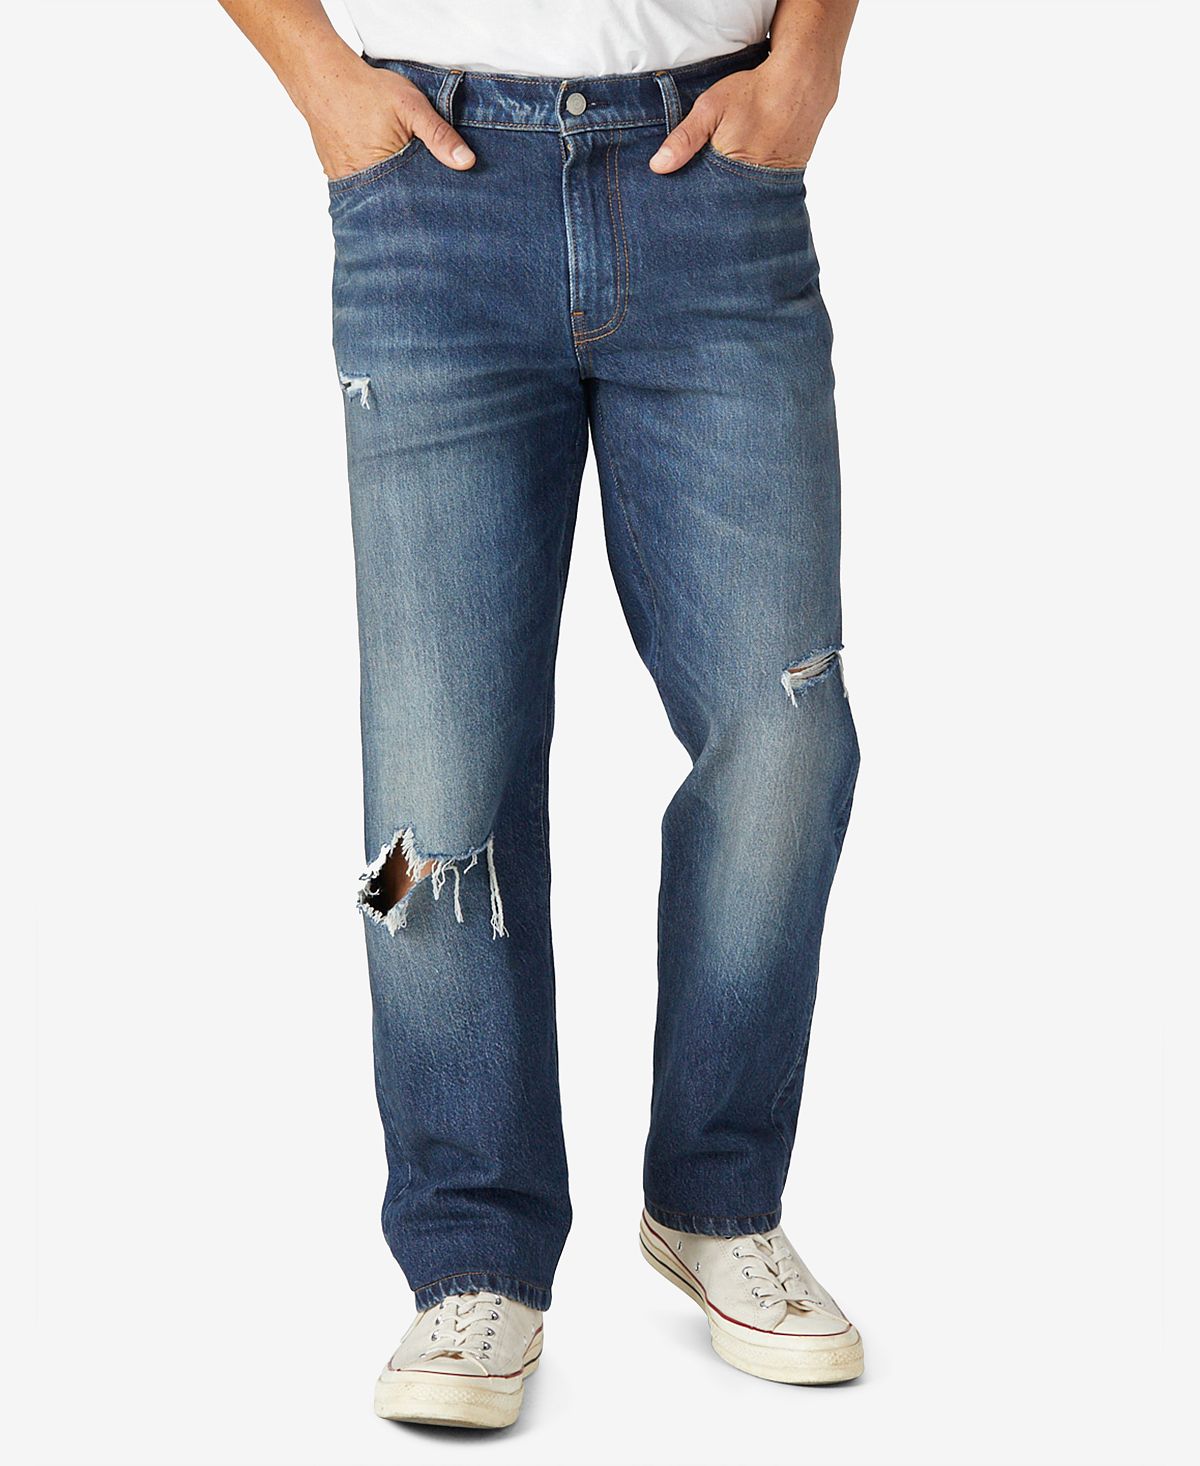 Мужские джинсы прямого кроя стрейч 363 с потертостями Lucky Brand джинсы lucky brand 363 straight premium coolmax jean цвет dawson